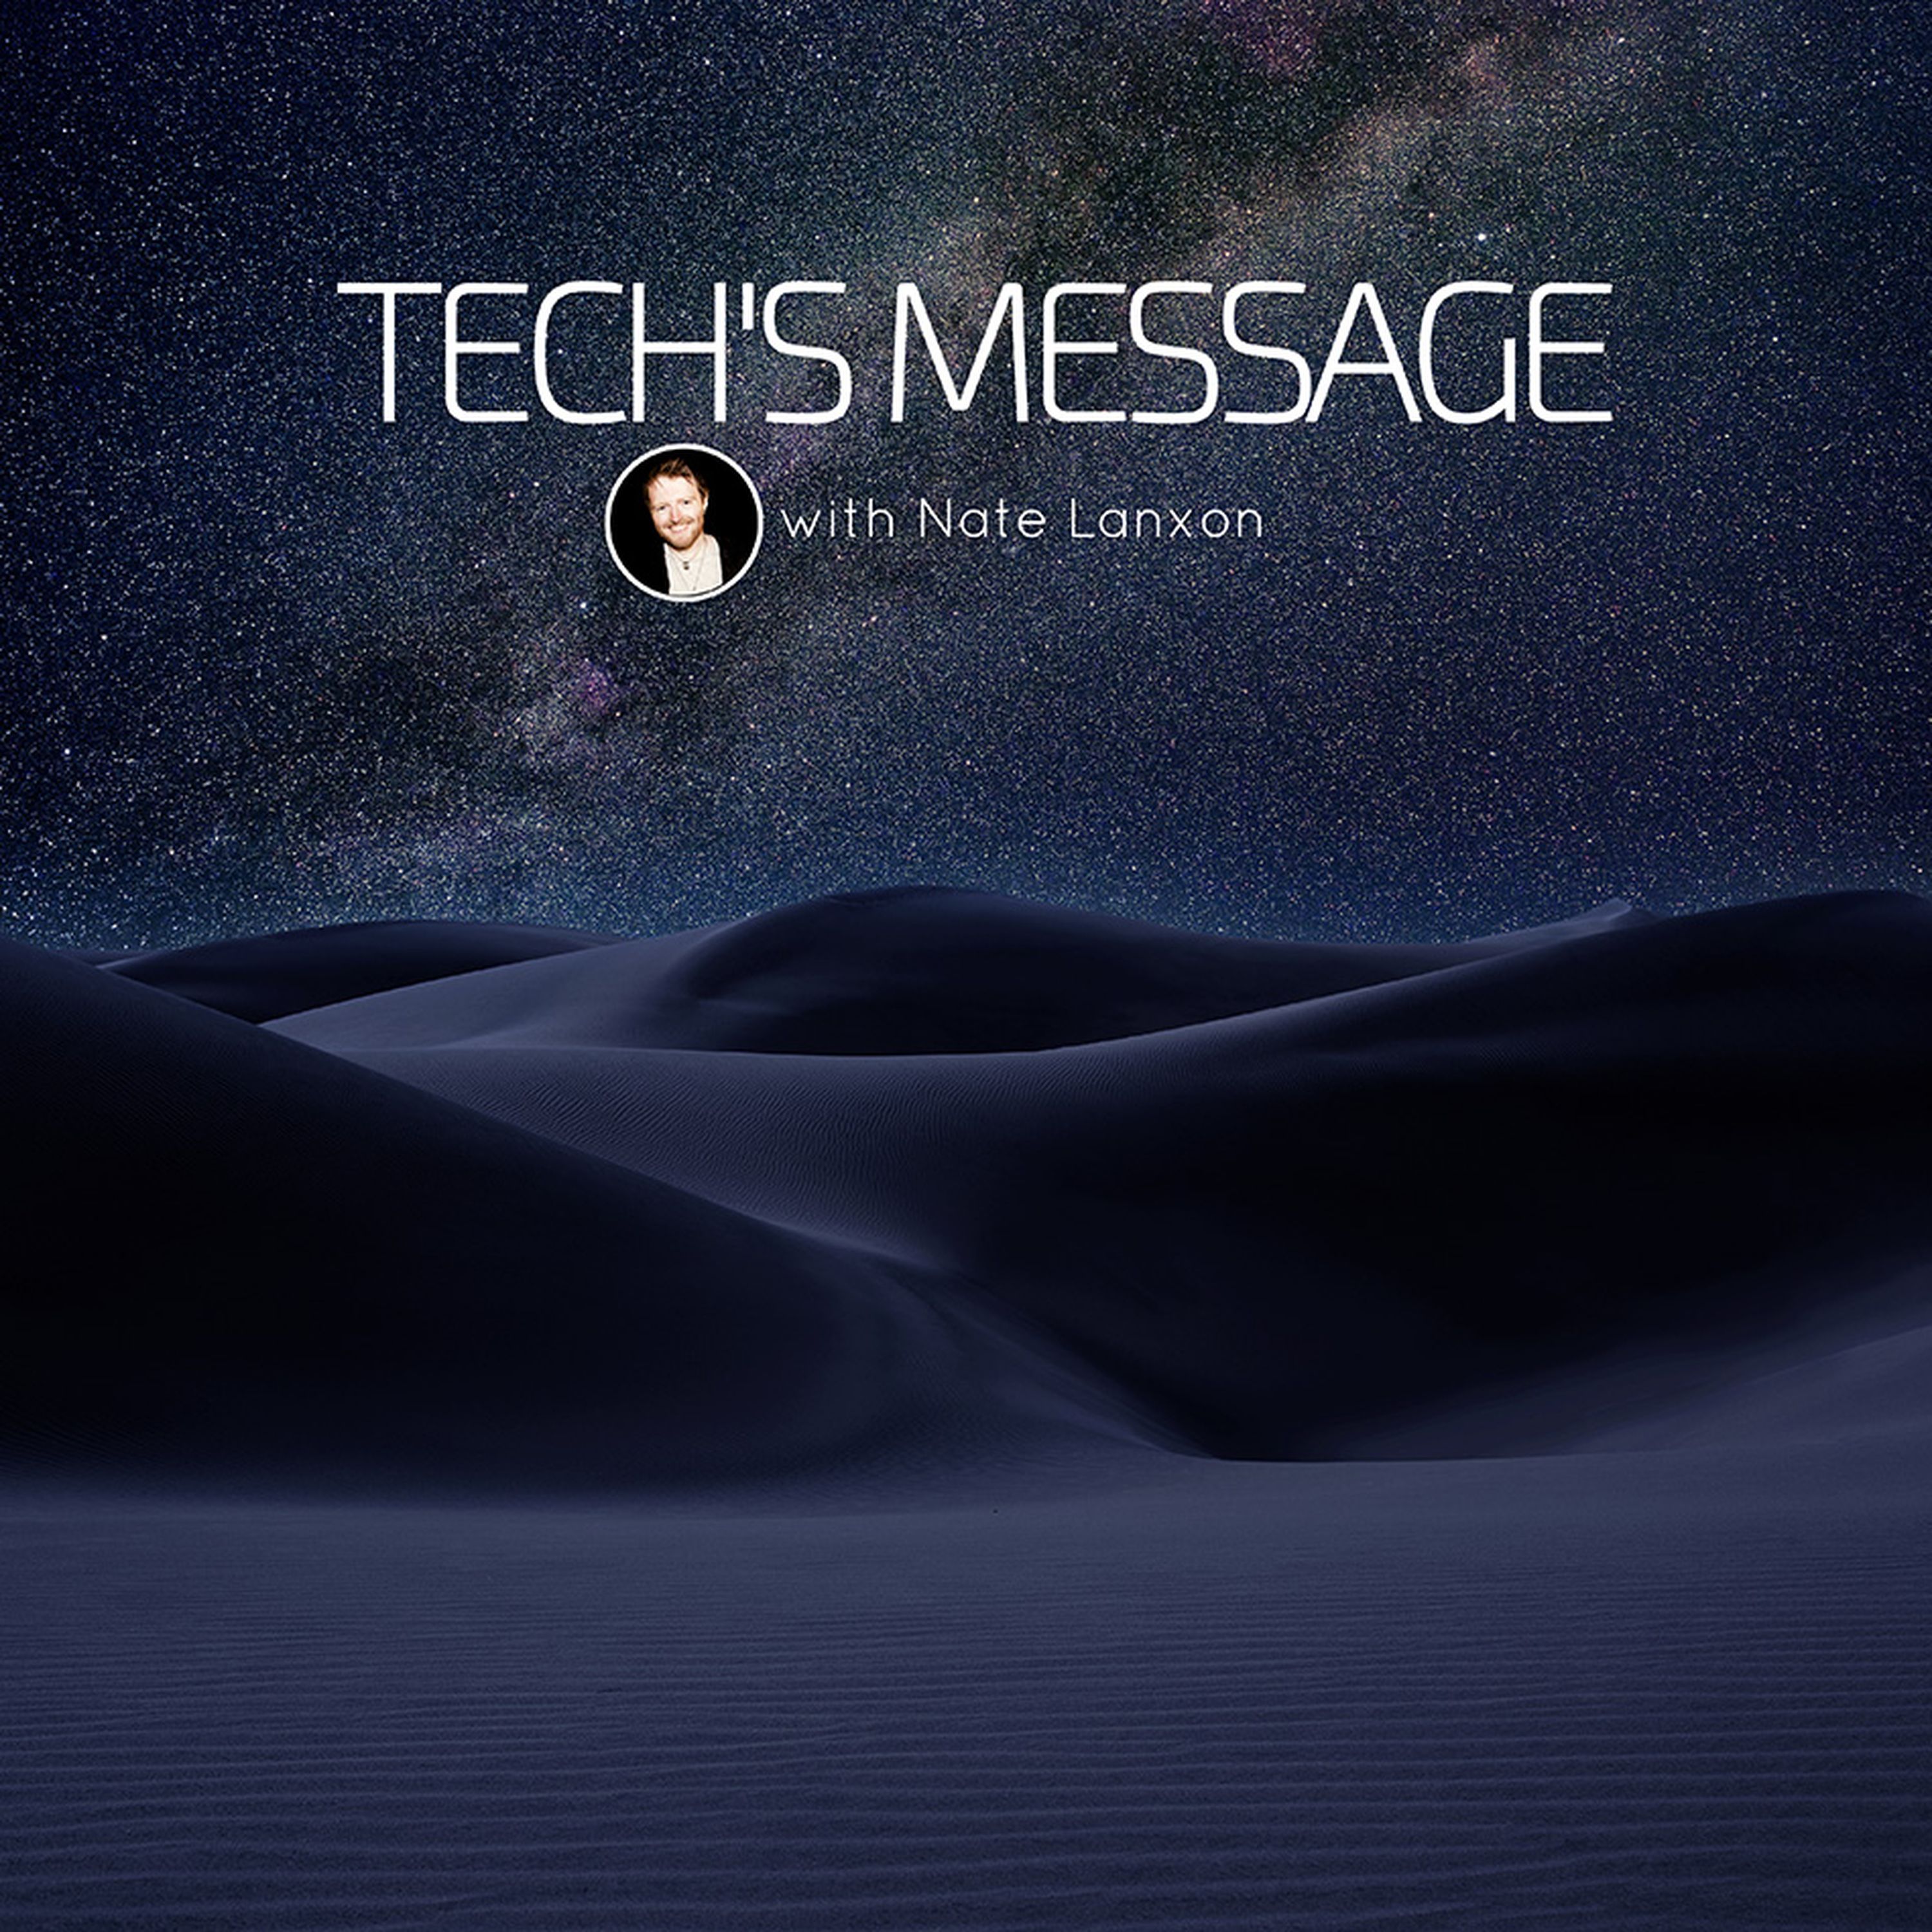 Tech's Message: News & Nostalgia With Nate Lanxon & Ian Morris